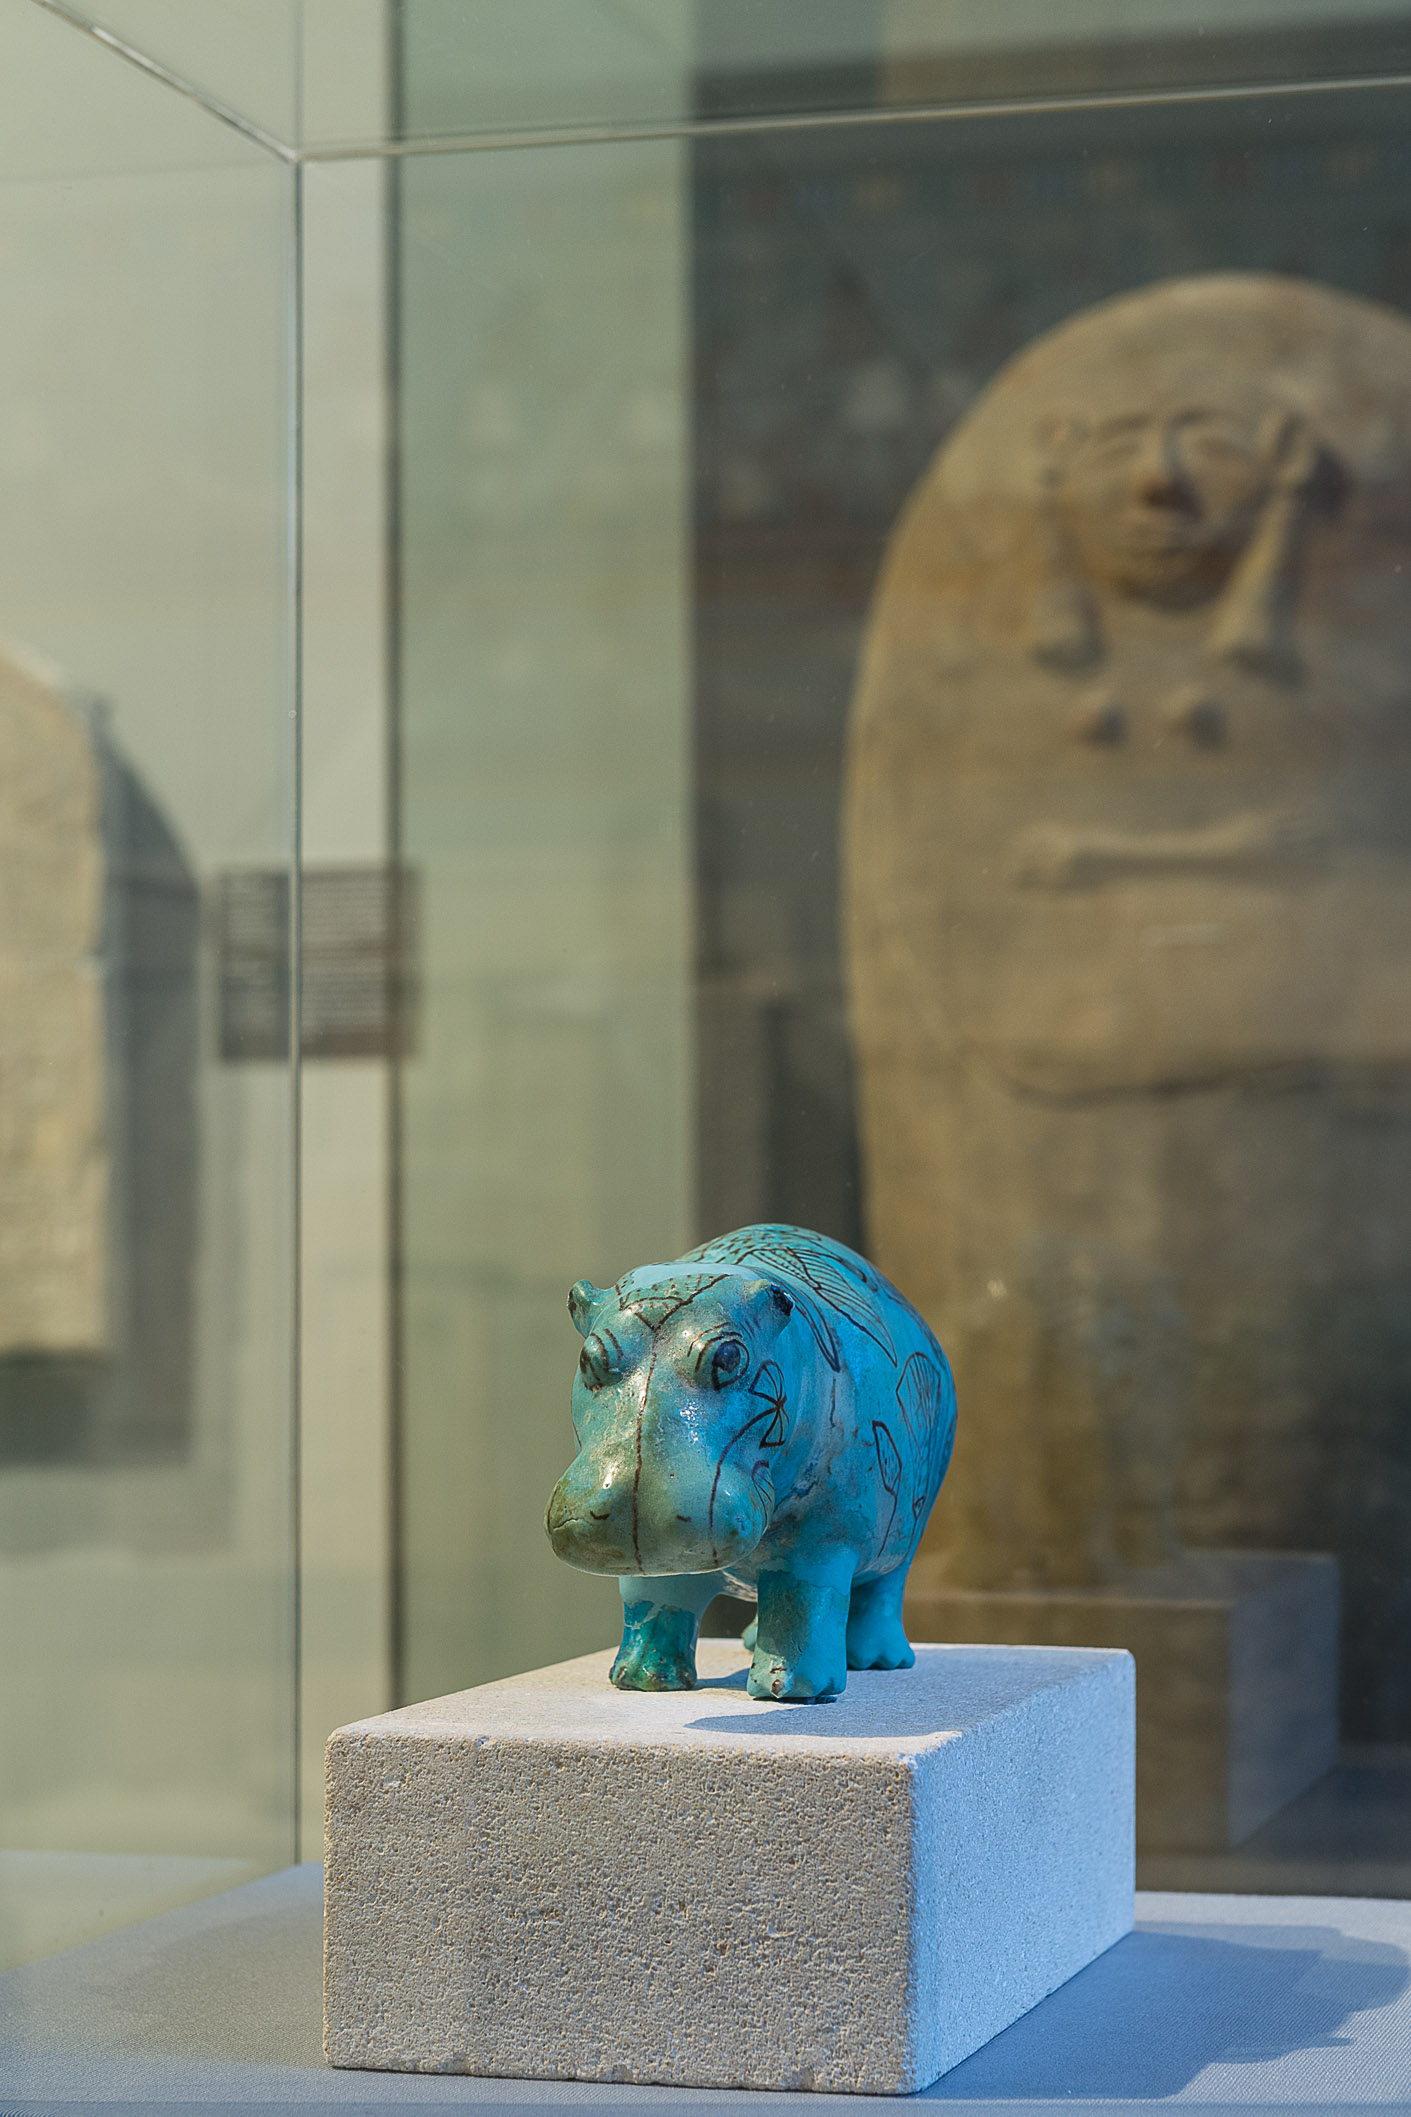 Hipopotam by Bilinmeyen Sanatçı - c. 2000 BC Kunsthistorisches Museum